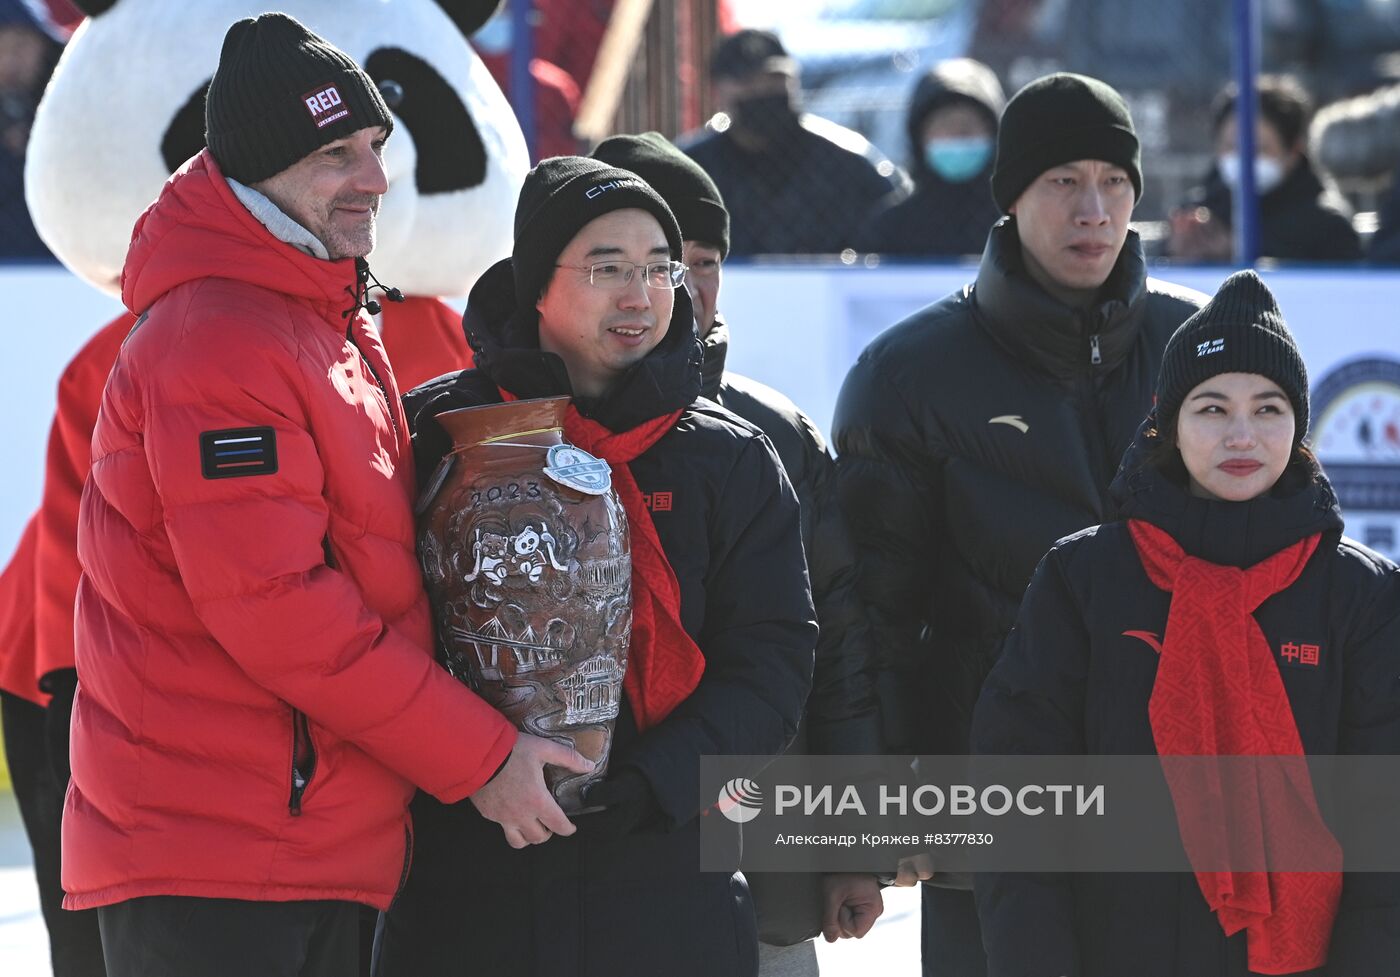 Открытие российско-китайского фестиваля зимних видов спорта. Хоккей на льду Амура открытия 